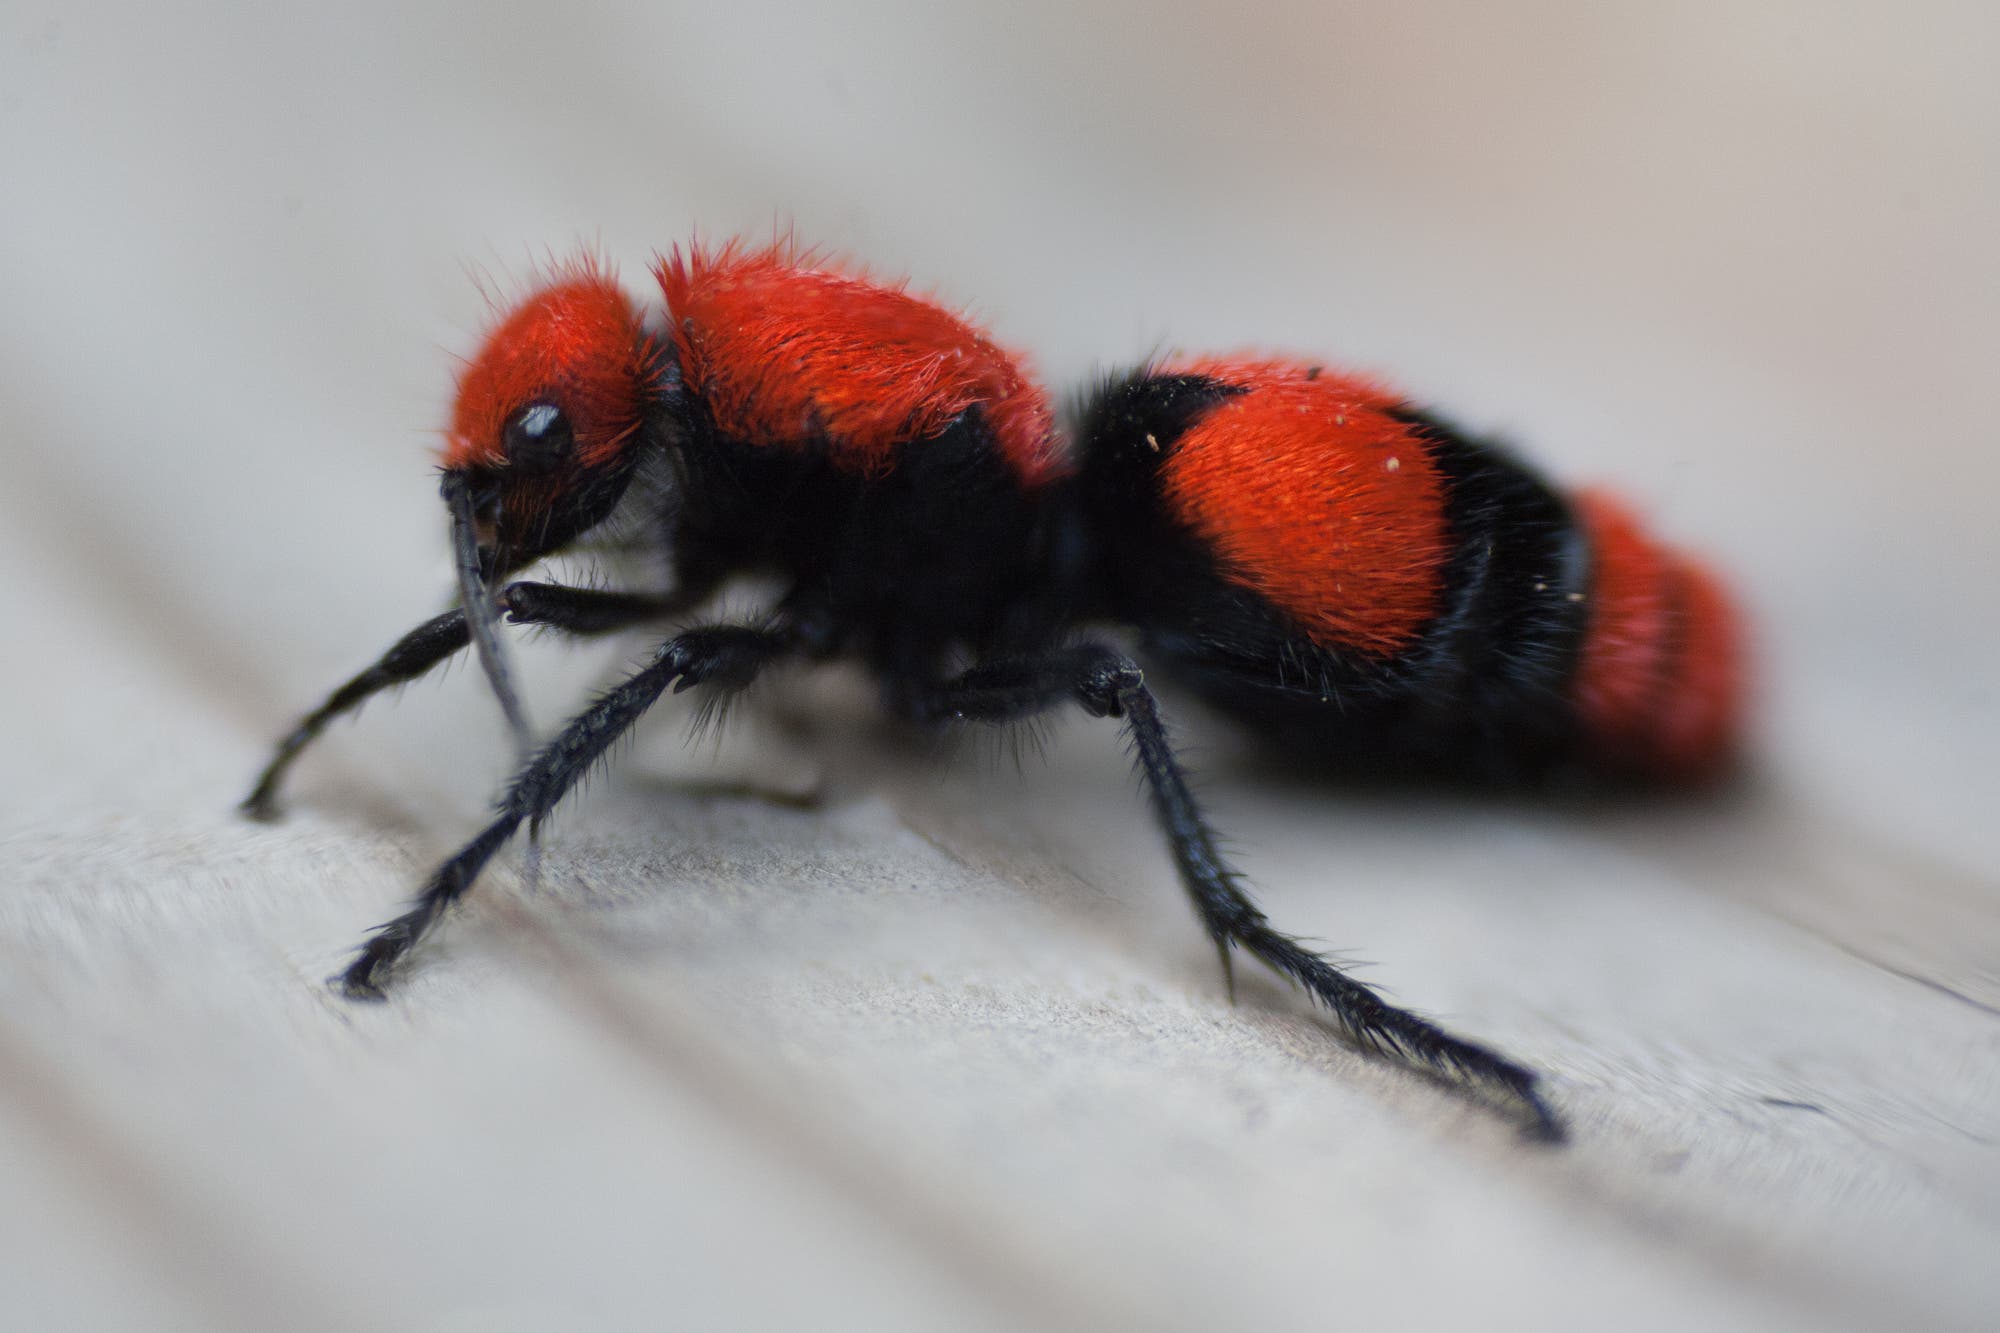 Eine schwarz-orangefarbene, flauschige Wespe ohne Flügel, die aussieht wie eine Ameise.